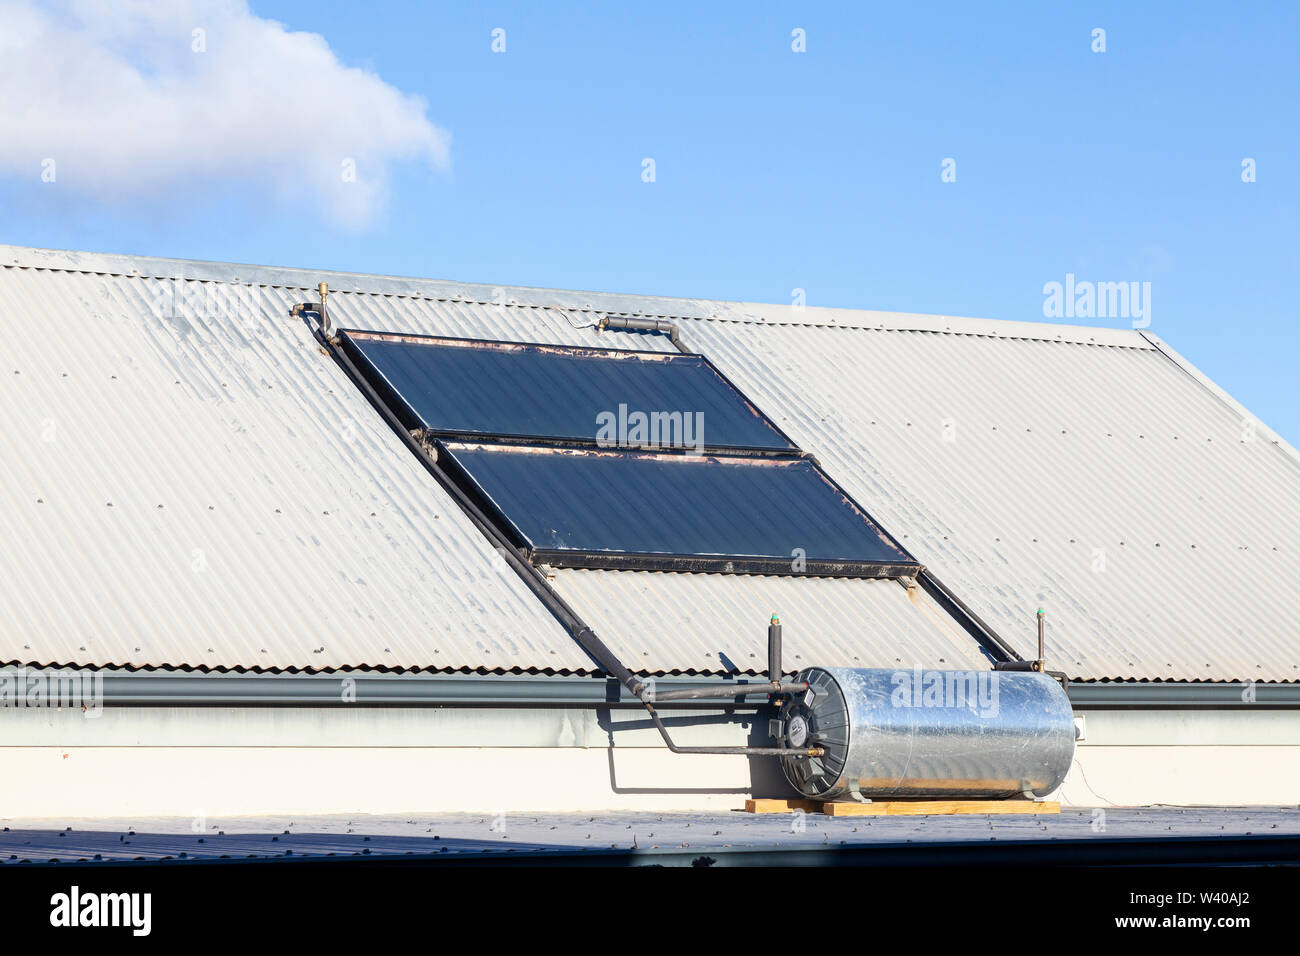 Dach montiert, Dachterrasse, inländische Solar Warmwasser Geysir mit Sonnenkollektoren und Wandler, erneuerbare, nachhaltige, alternative, grüne Energie. Geys Stockfoto